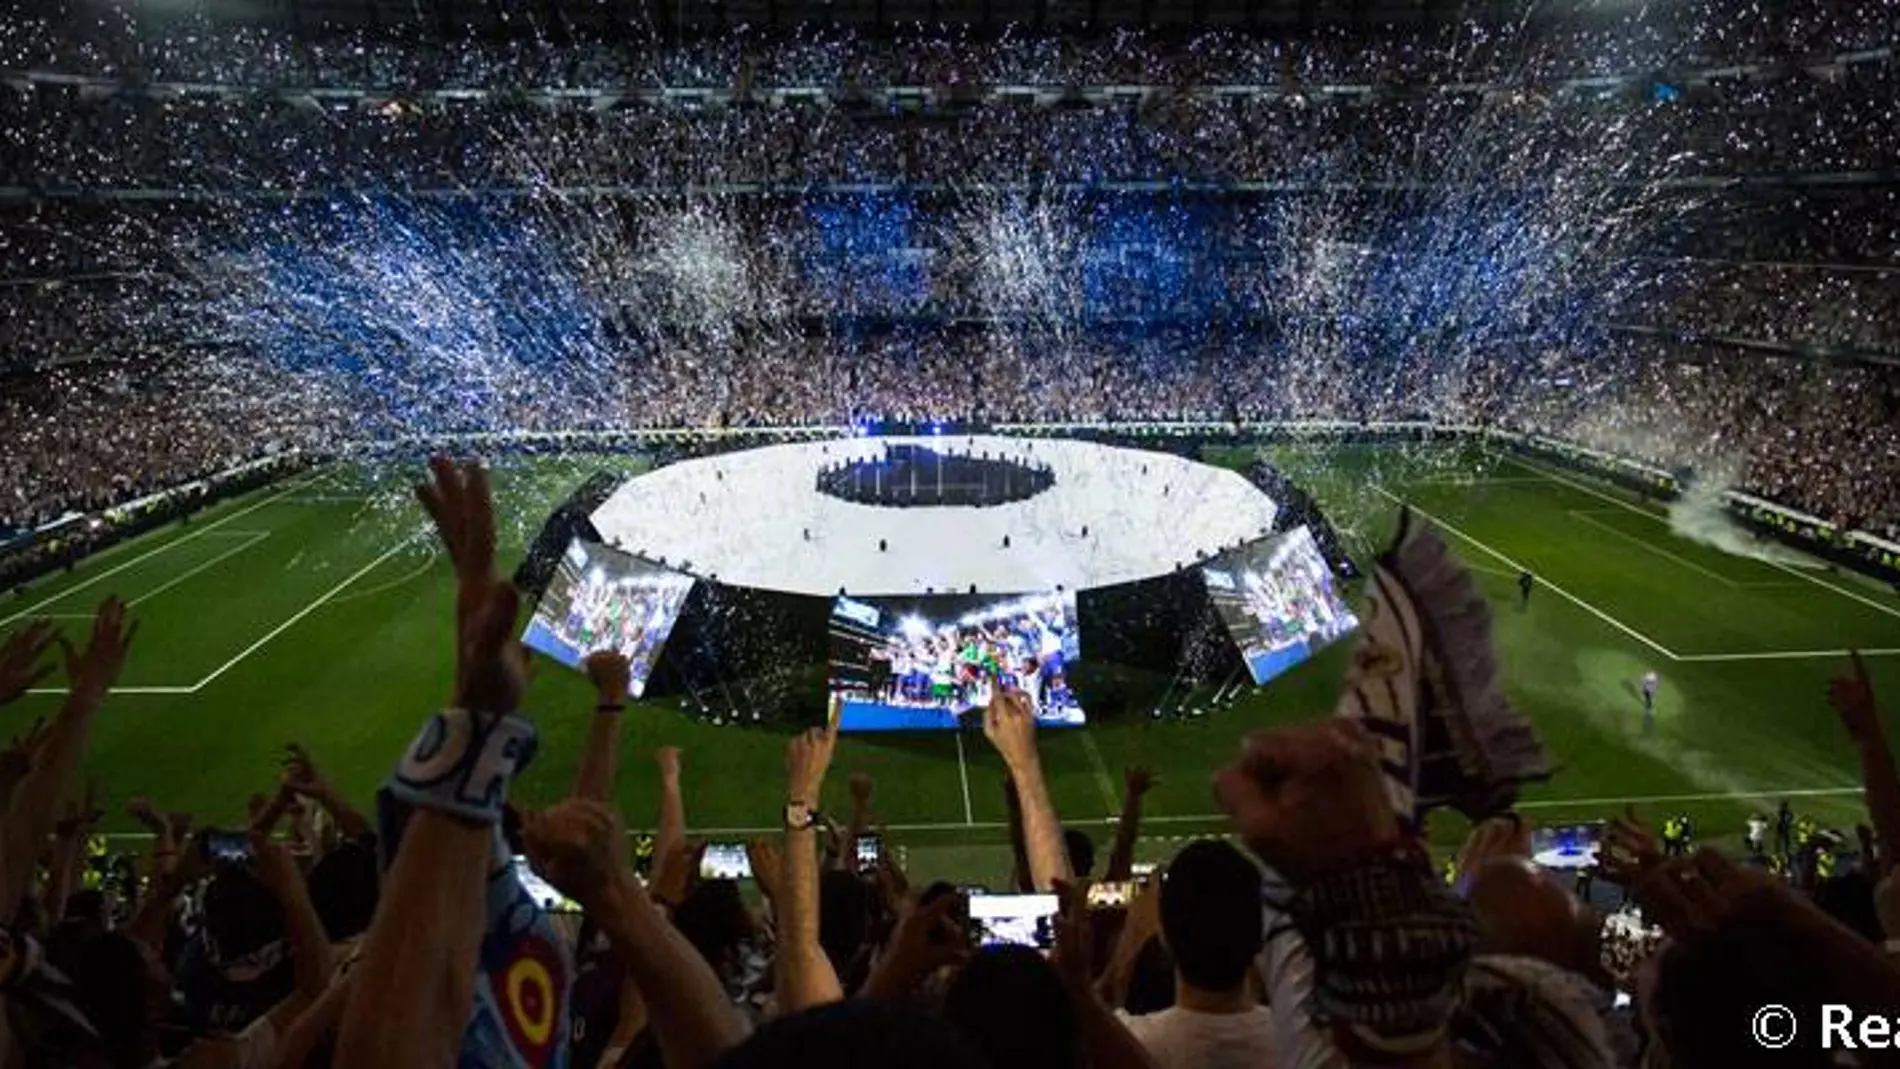 El fin de fiesta comenzará a las 22:00 horas en el Santiago Bernabéu